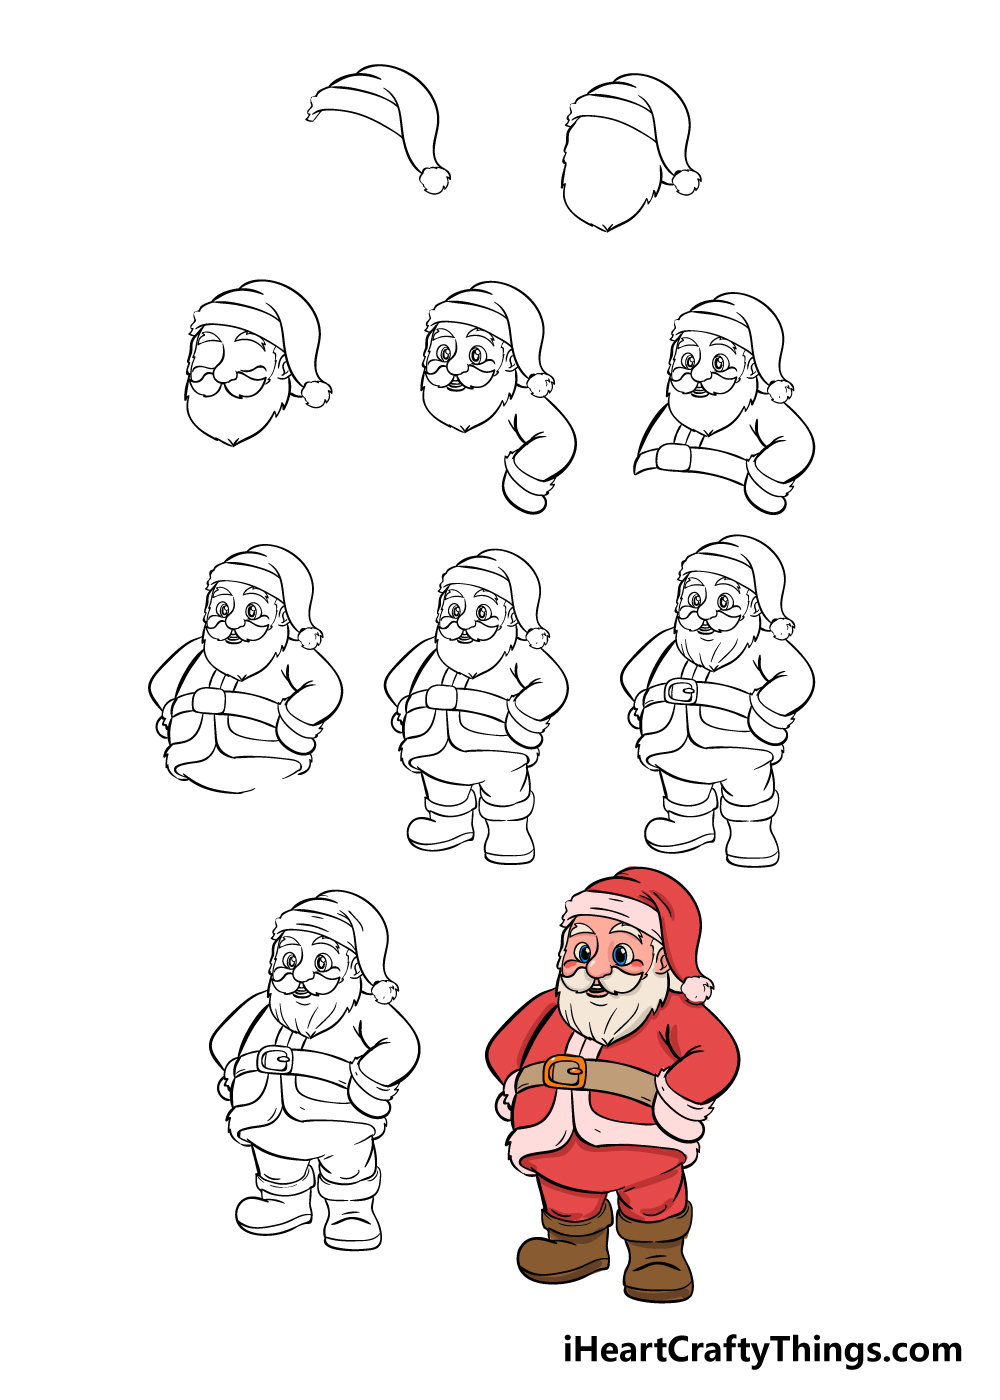 Santa Drawing How To Draw Santa Step By Step